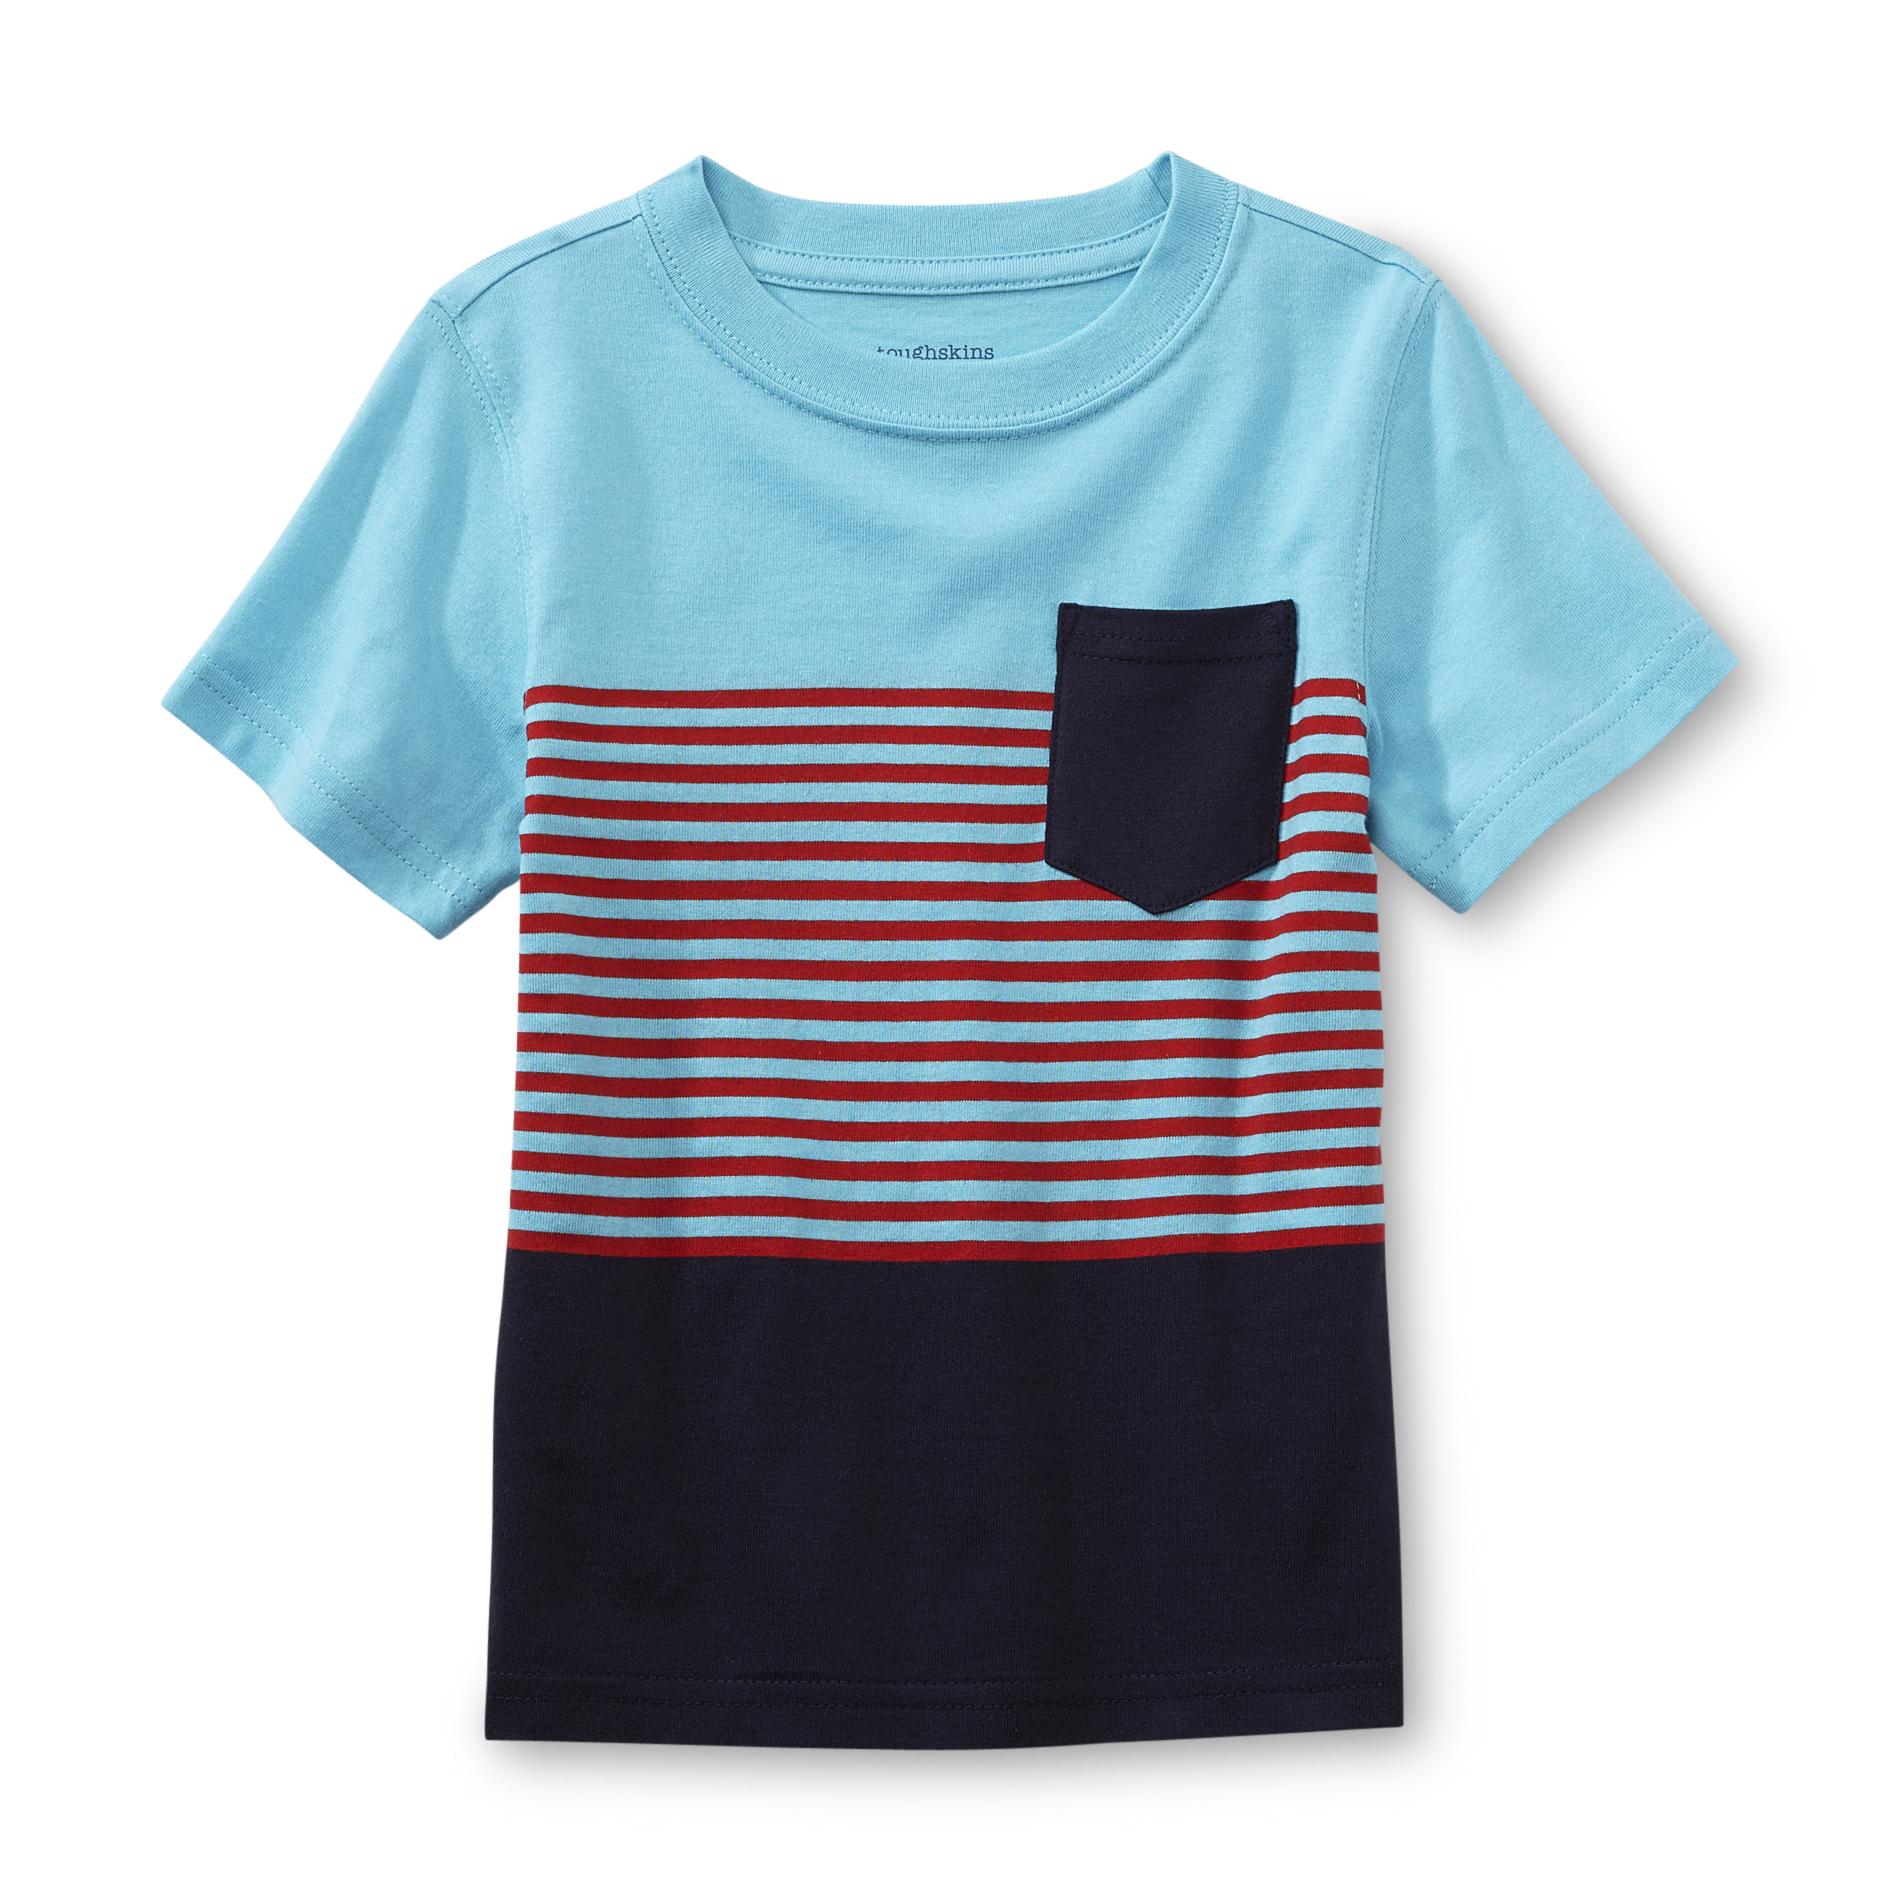 Toughskins Boy's Pocket T-Shirt - Striped